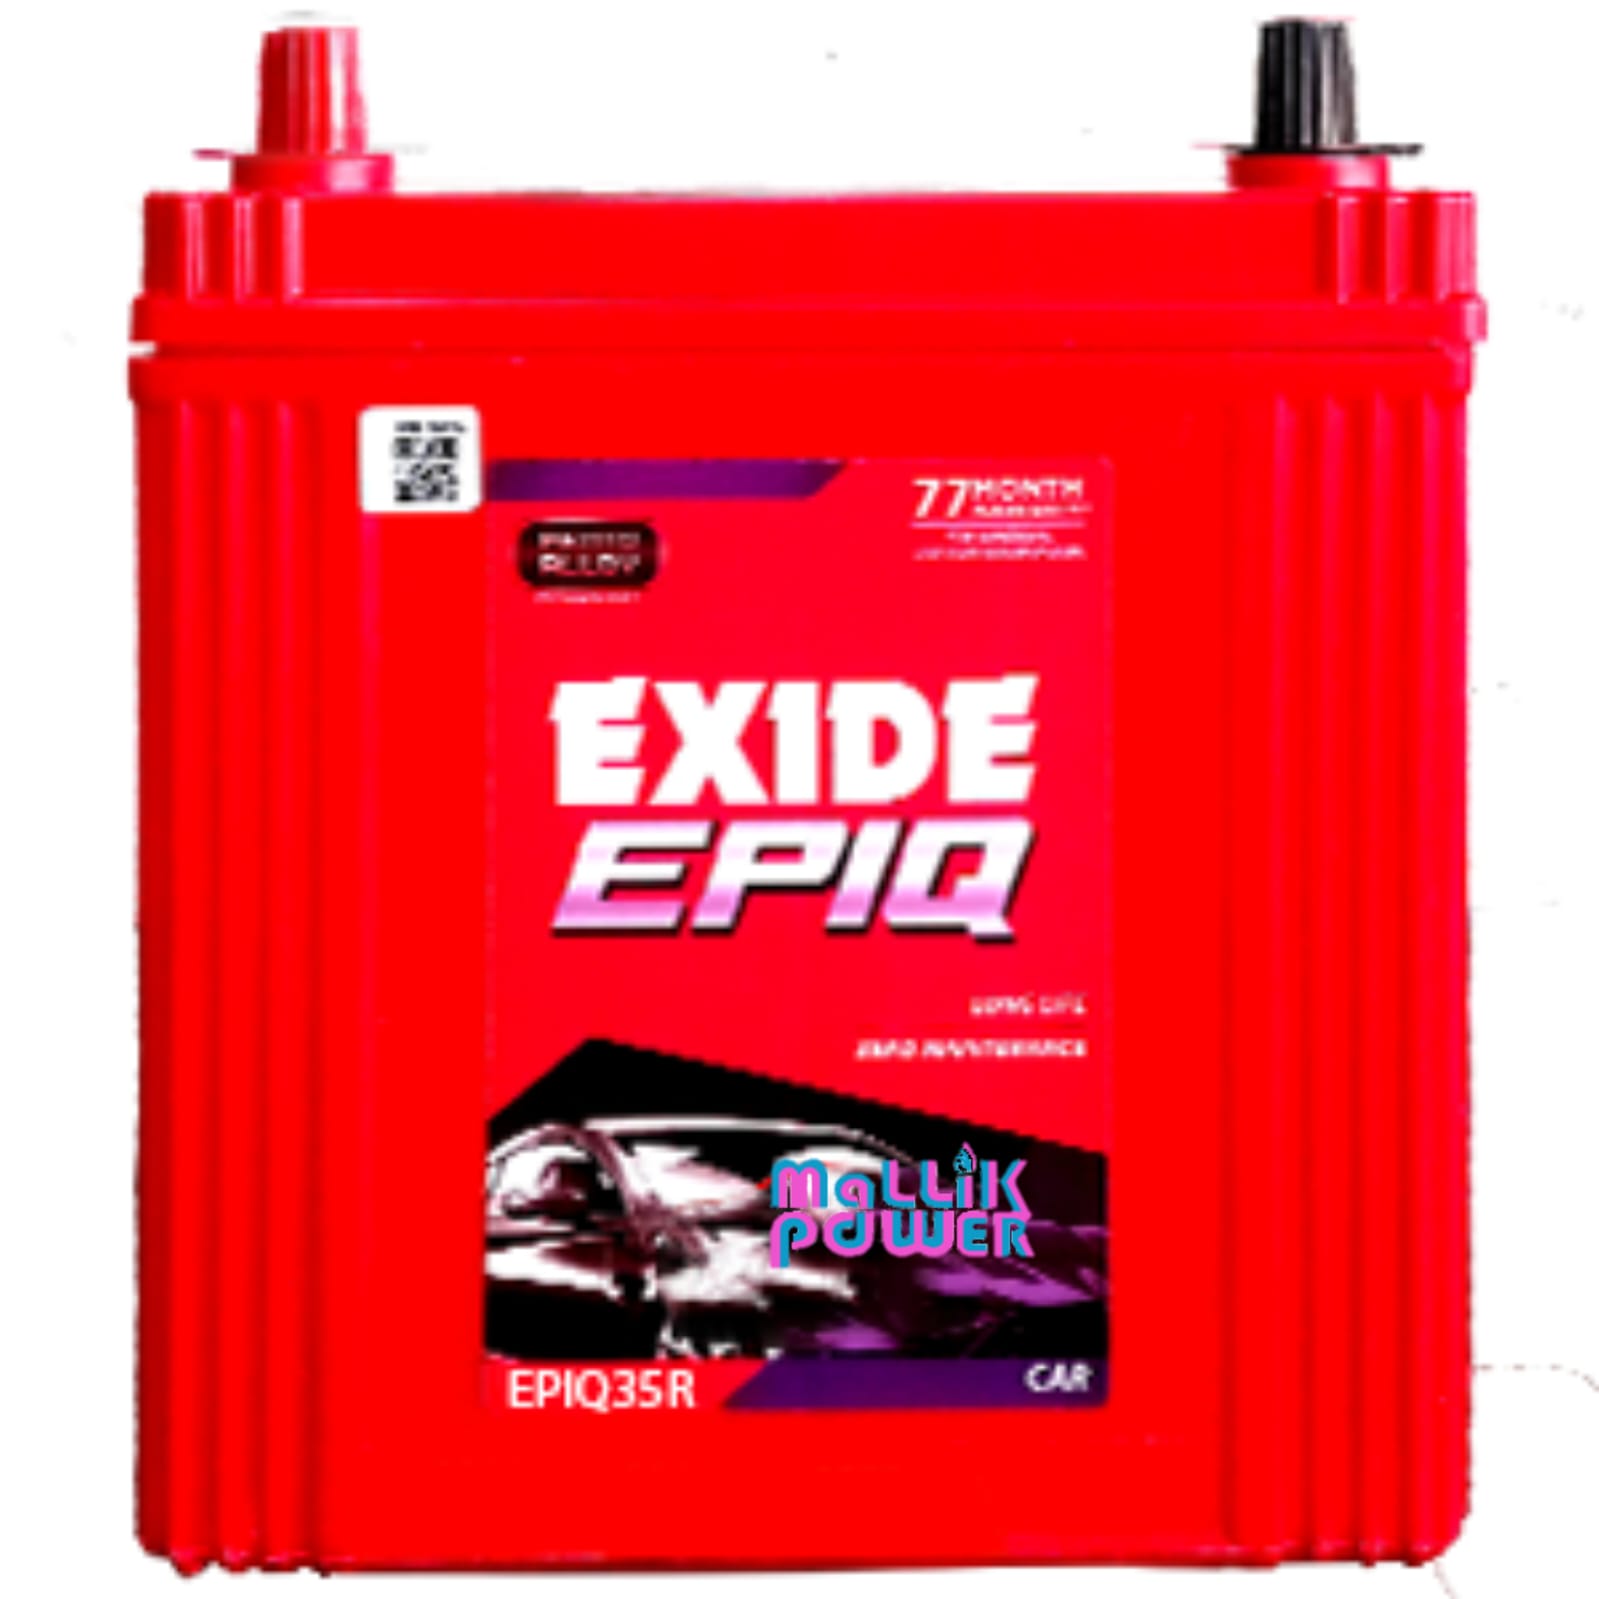 EXIDE EPIQ(EPIQ35R)